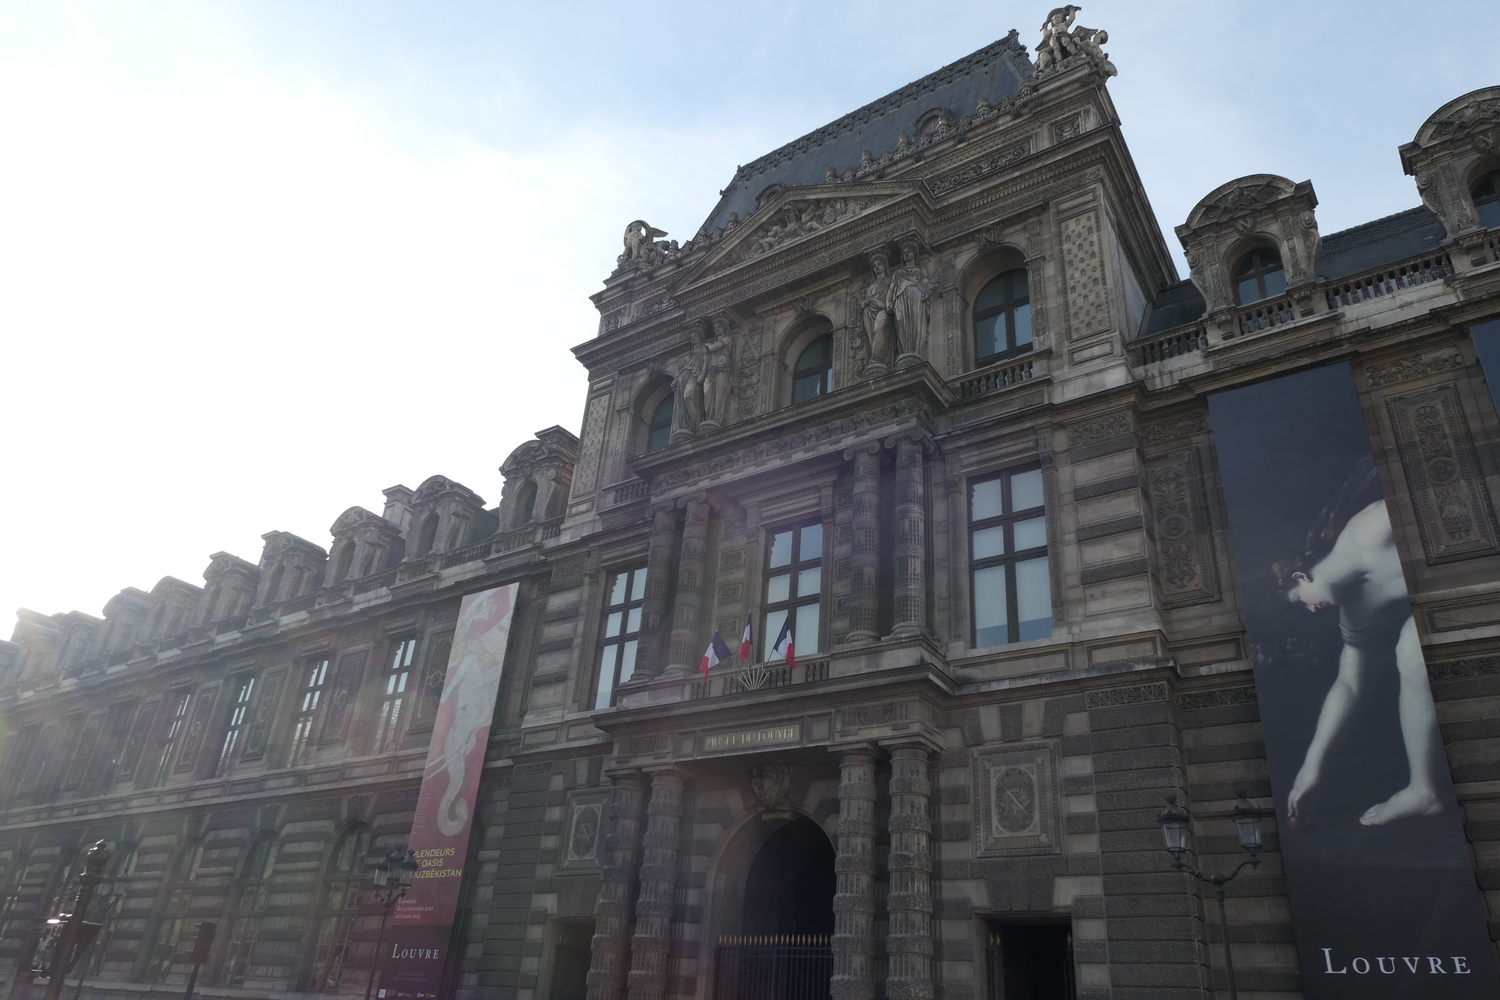 Après l’interview, Océane fait encore un peu de tourisme en passant devant le Louvre baigné de soleil © Globe Reporters